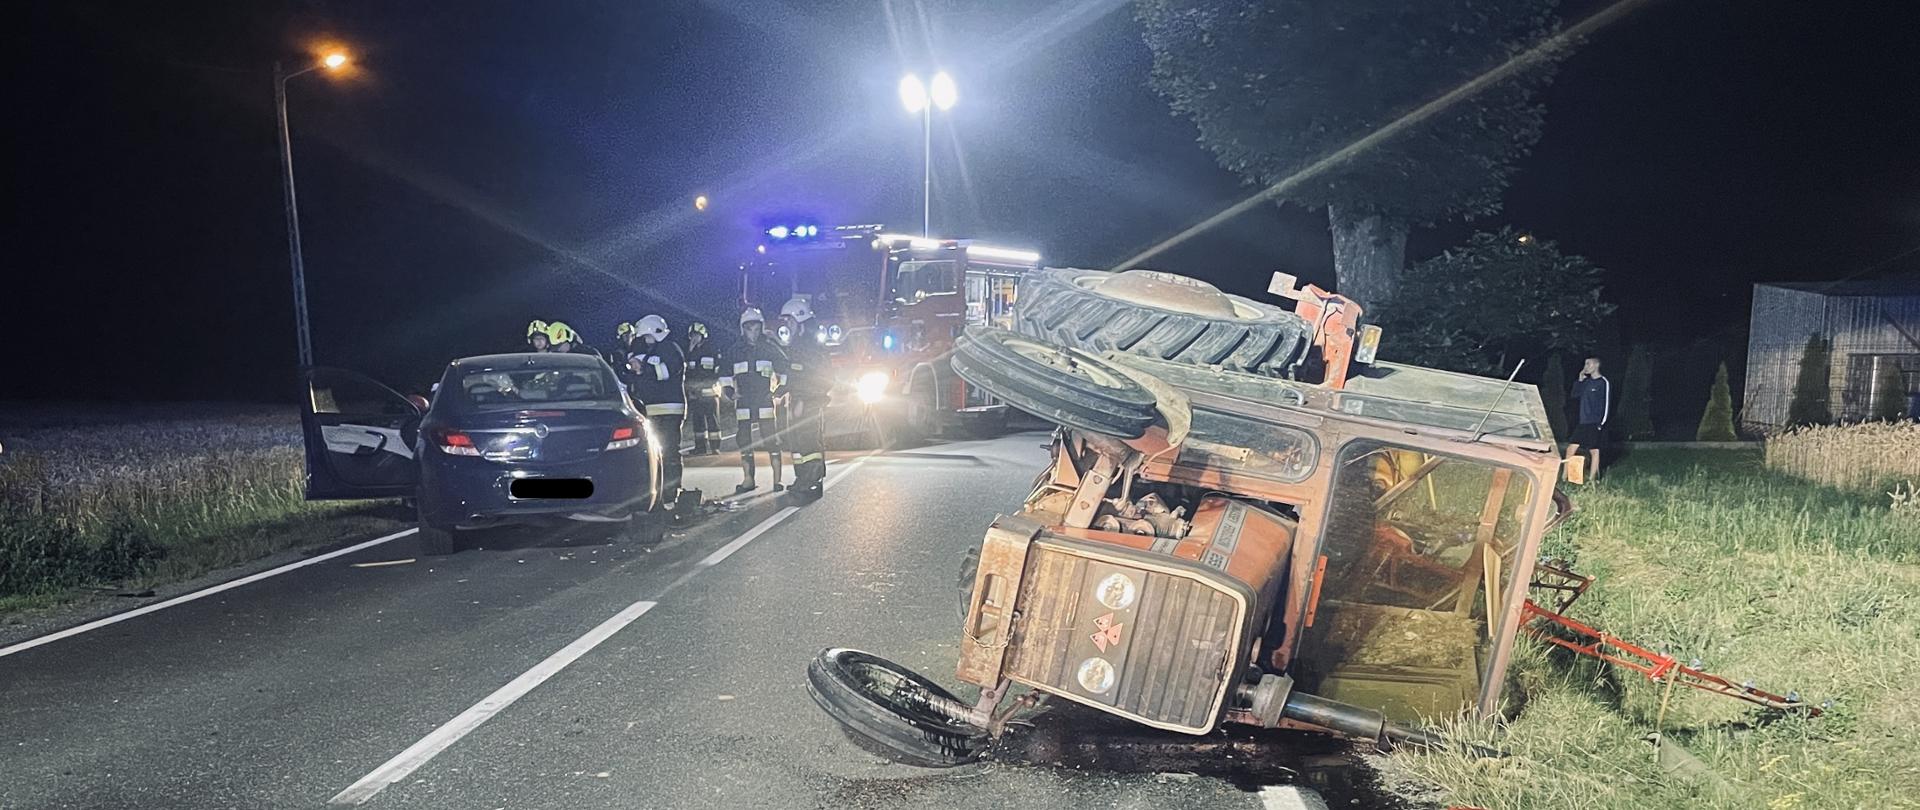 Na zdjęciu widoczny przewrócony ciągnik rolniczy oraz samochód osobowy po zderzanie w dali samochód pożarniczy oraz ratownicy